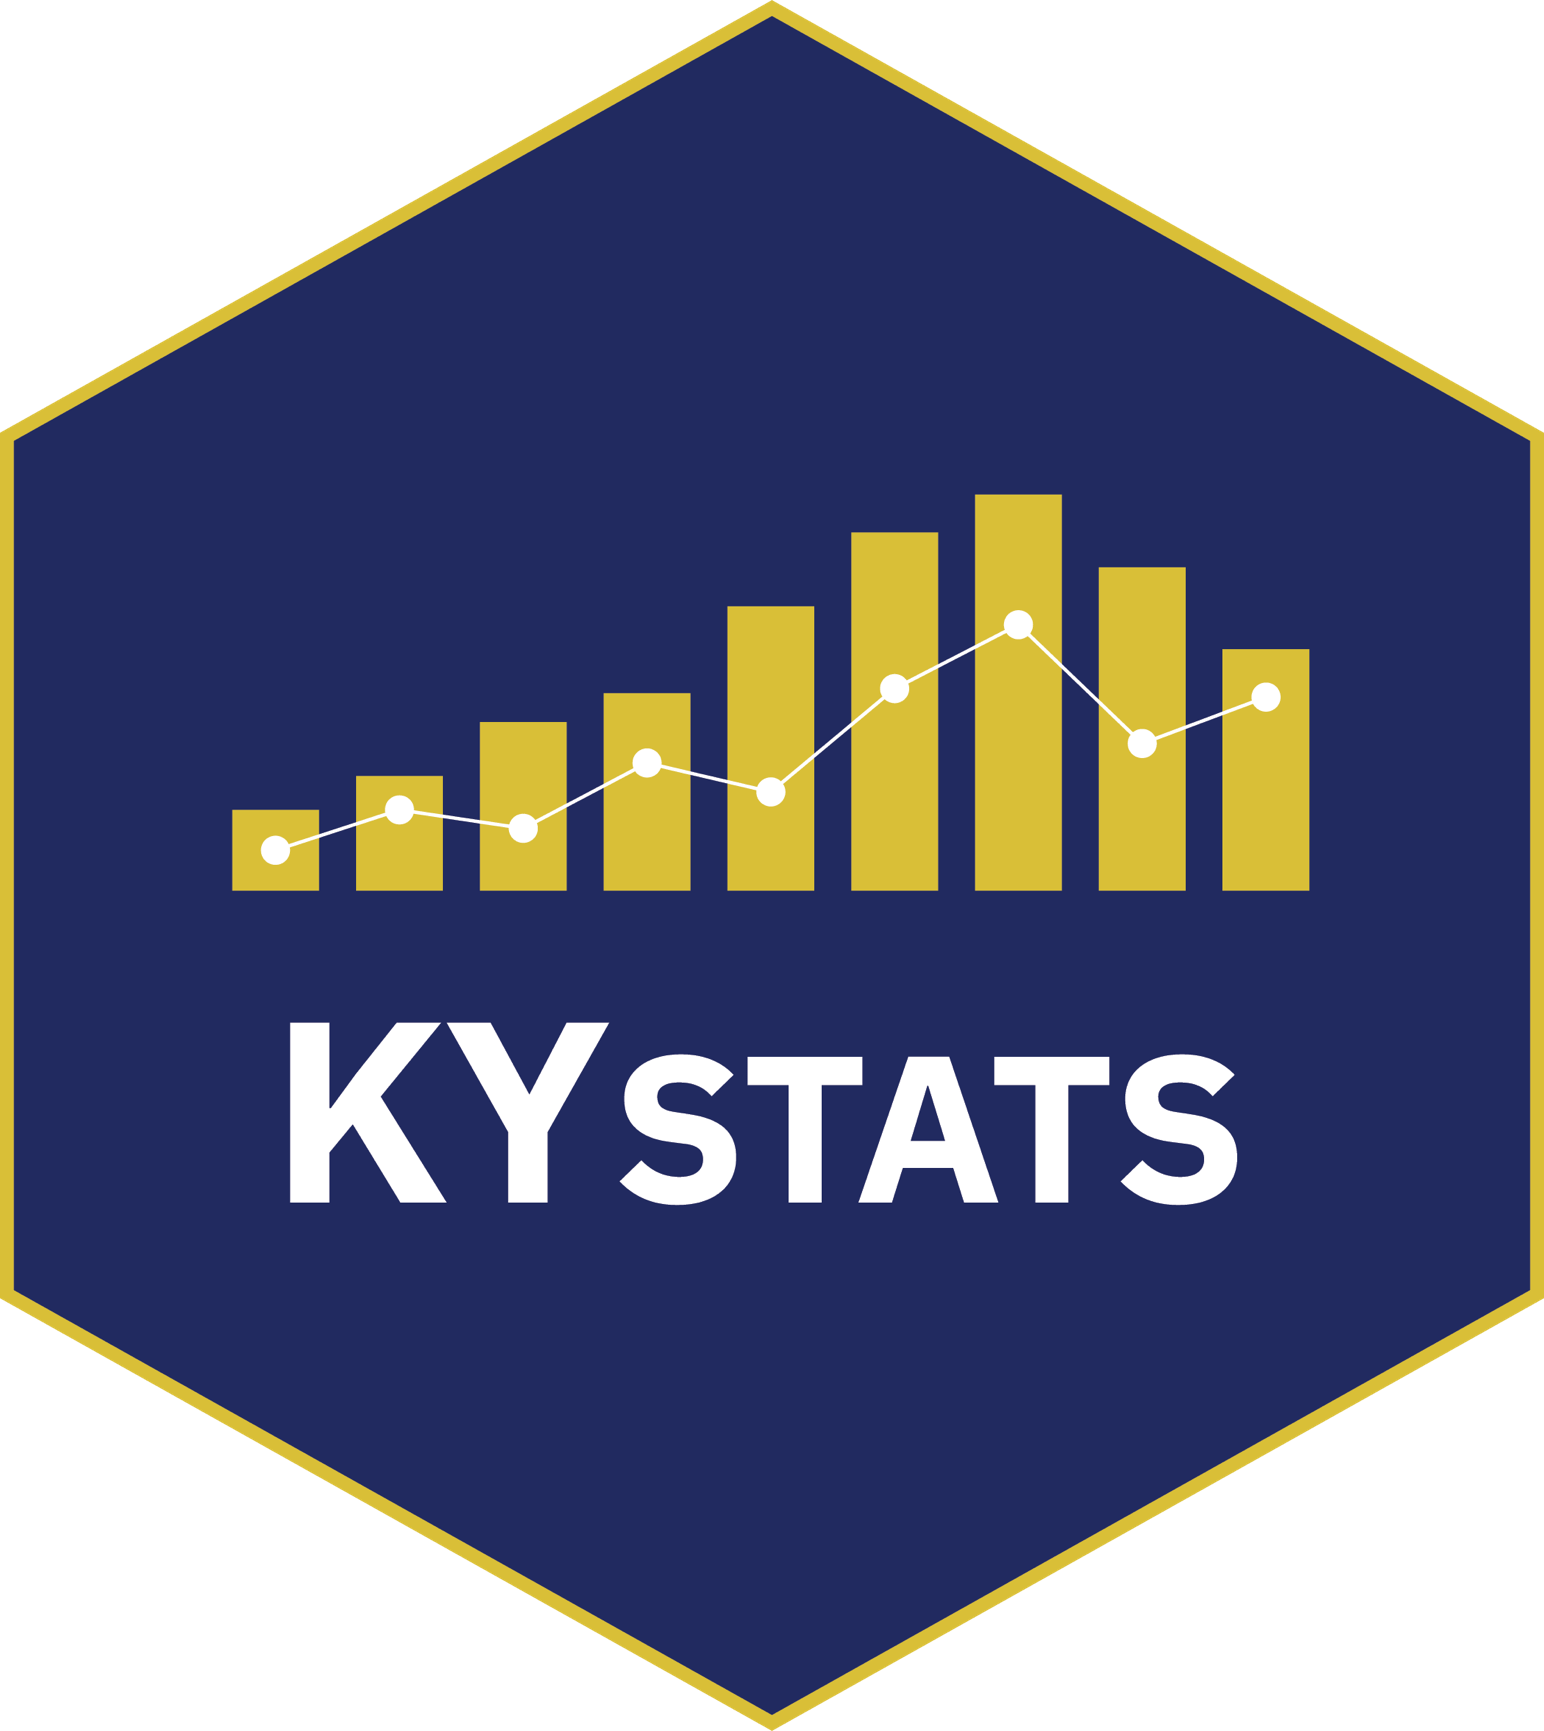 KY Stats logo